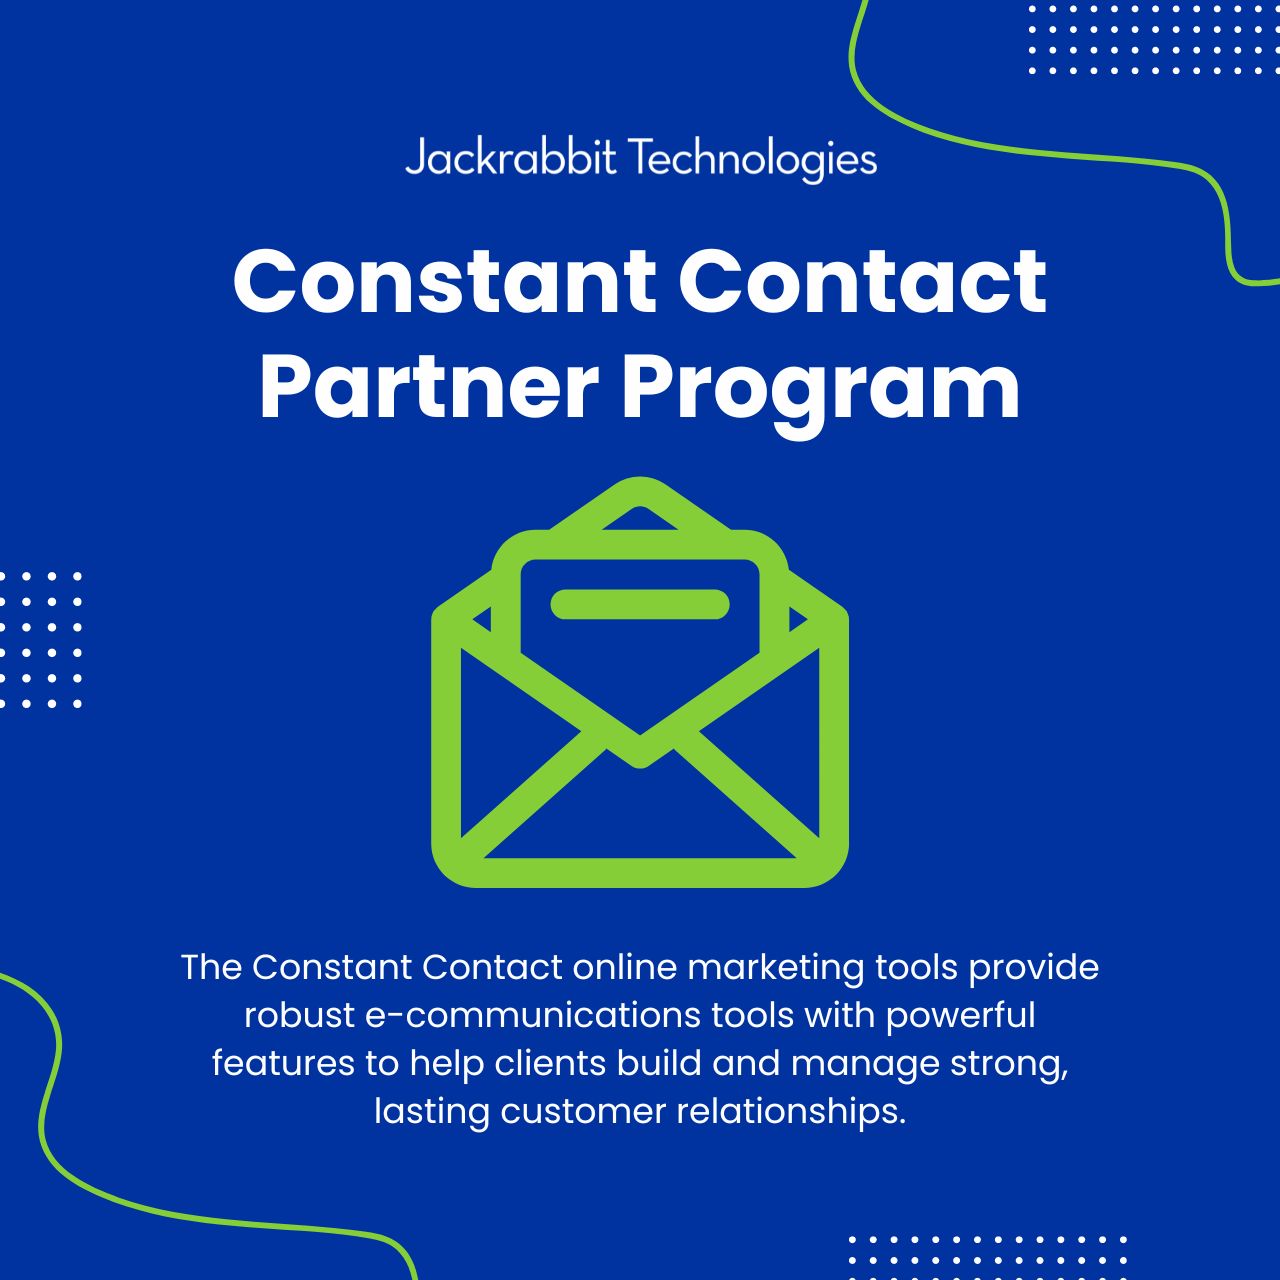 jackrabbit constant contact partner program